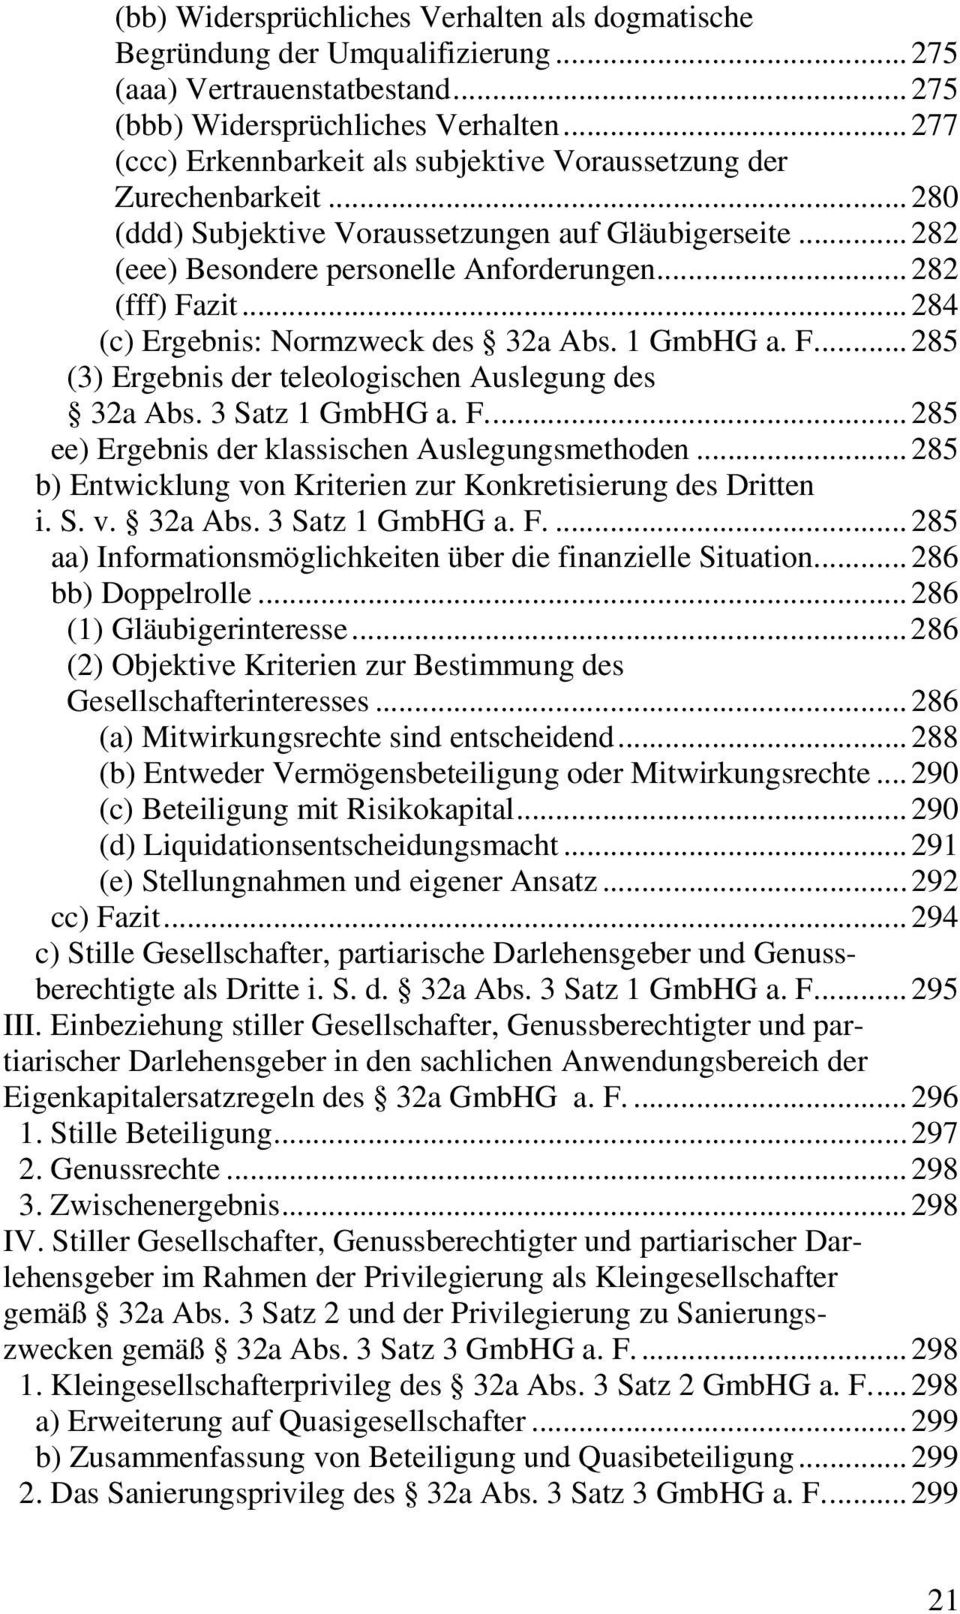 ..284 (c) Ergebnis: Normzweck des 32a Abs. 1 GmbHG a. F...285 (3) Ergebnis der teleologischen Auslegung des 32a Abs. 3 Satz 1 GmbHG a. F...285 ee) Ergebnis der klassischen Auslegungsmethoden.